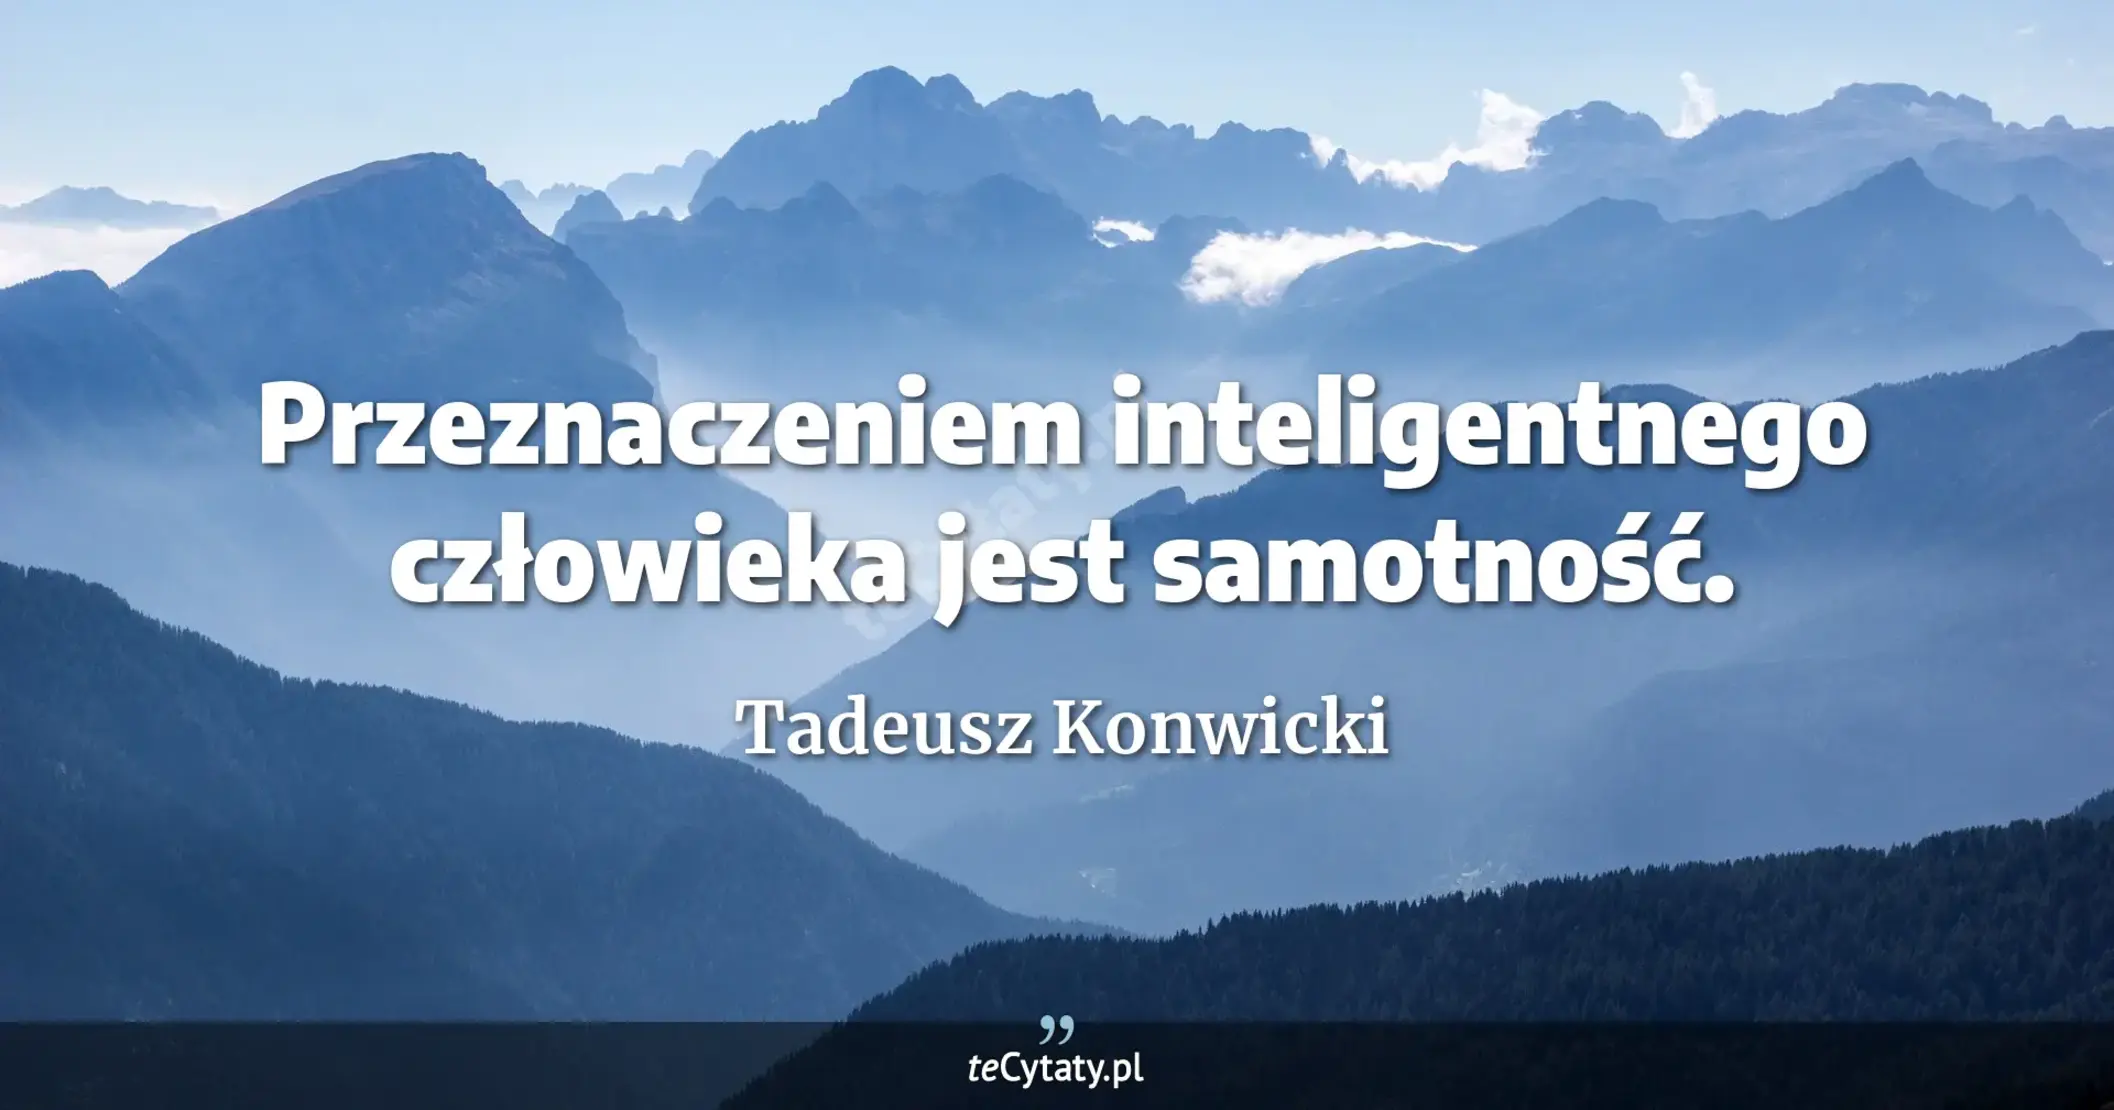 Przeznaczeniem inteligentnego człowieka jest samotność. - Tadeusz Konwicki